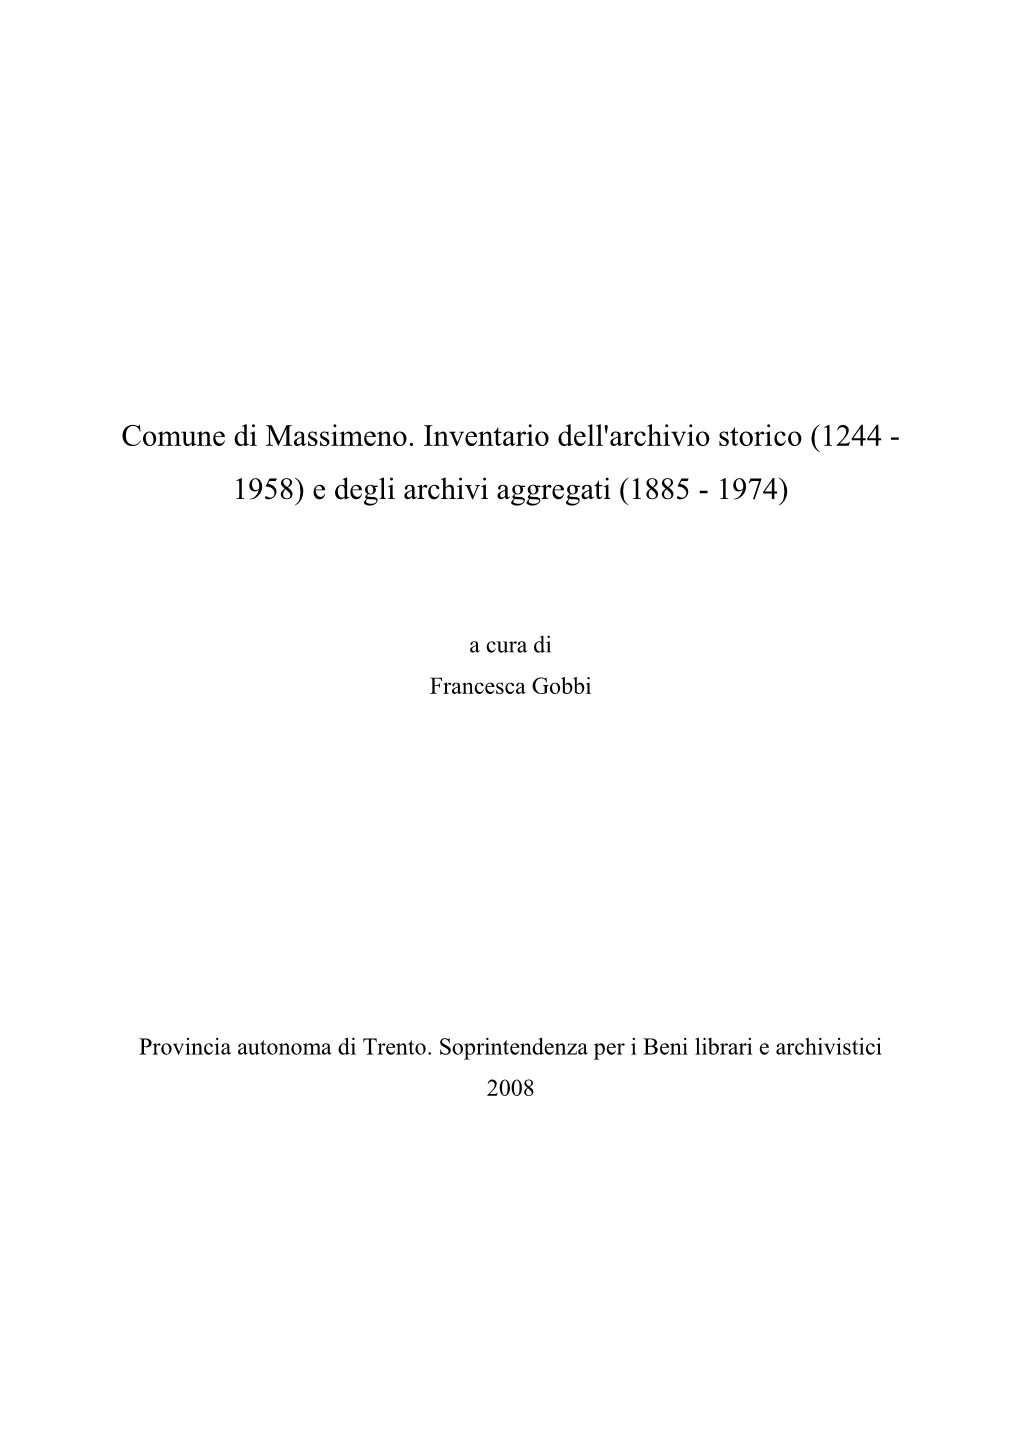 Comune Di Massimeno. Inventario Dell'archivio Storico (1244 - 1958) E Degli Archivi Aggregati (1885 - 1974)